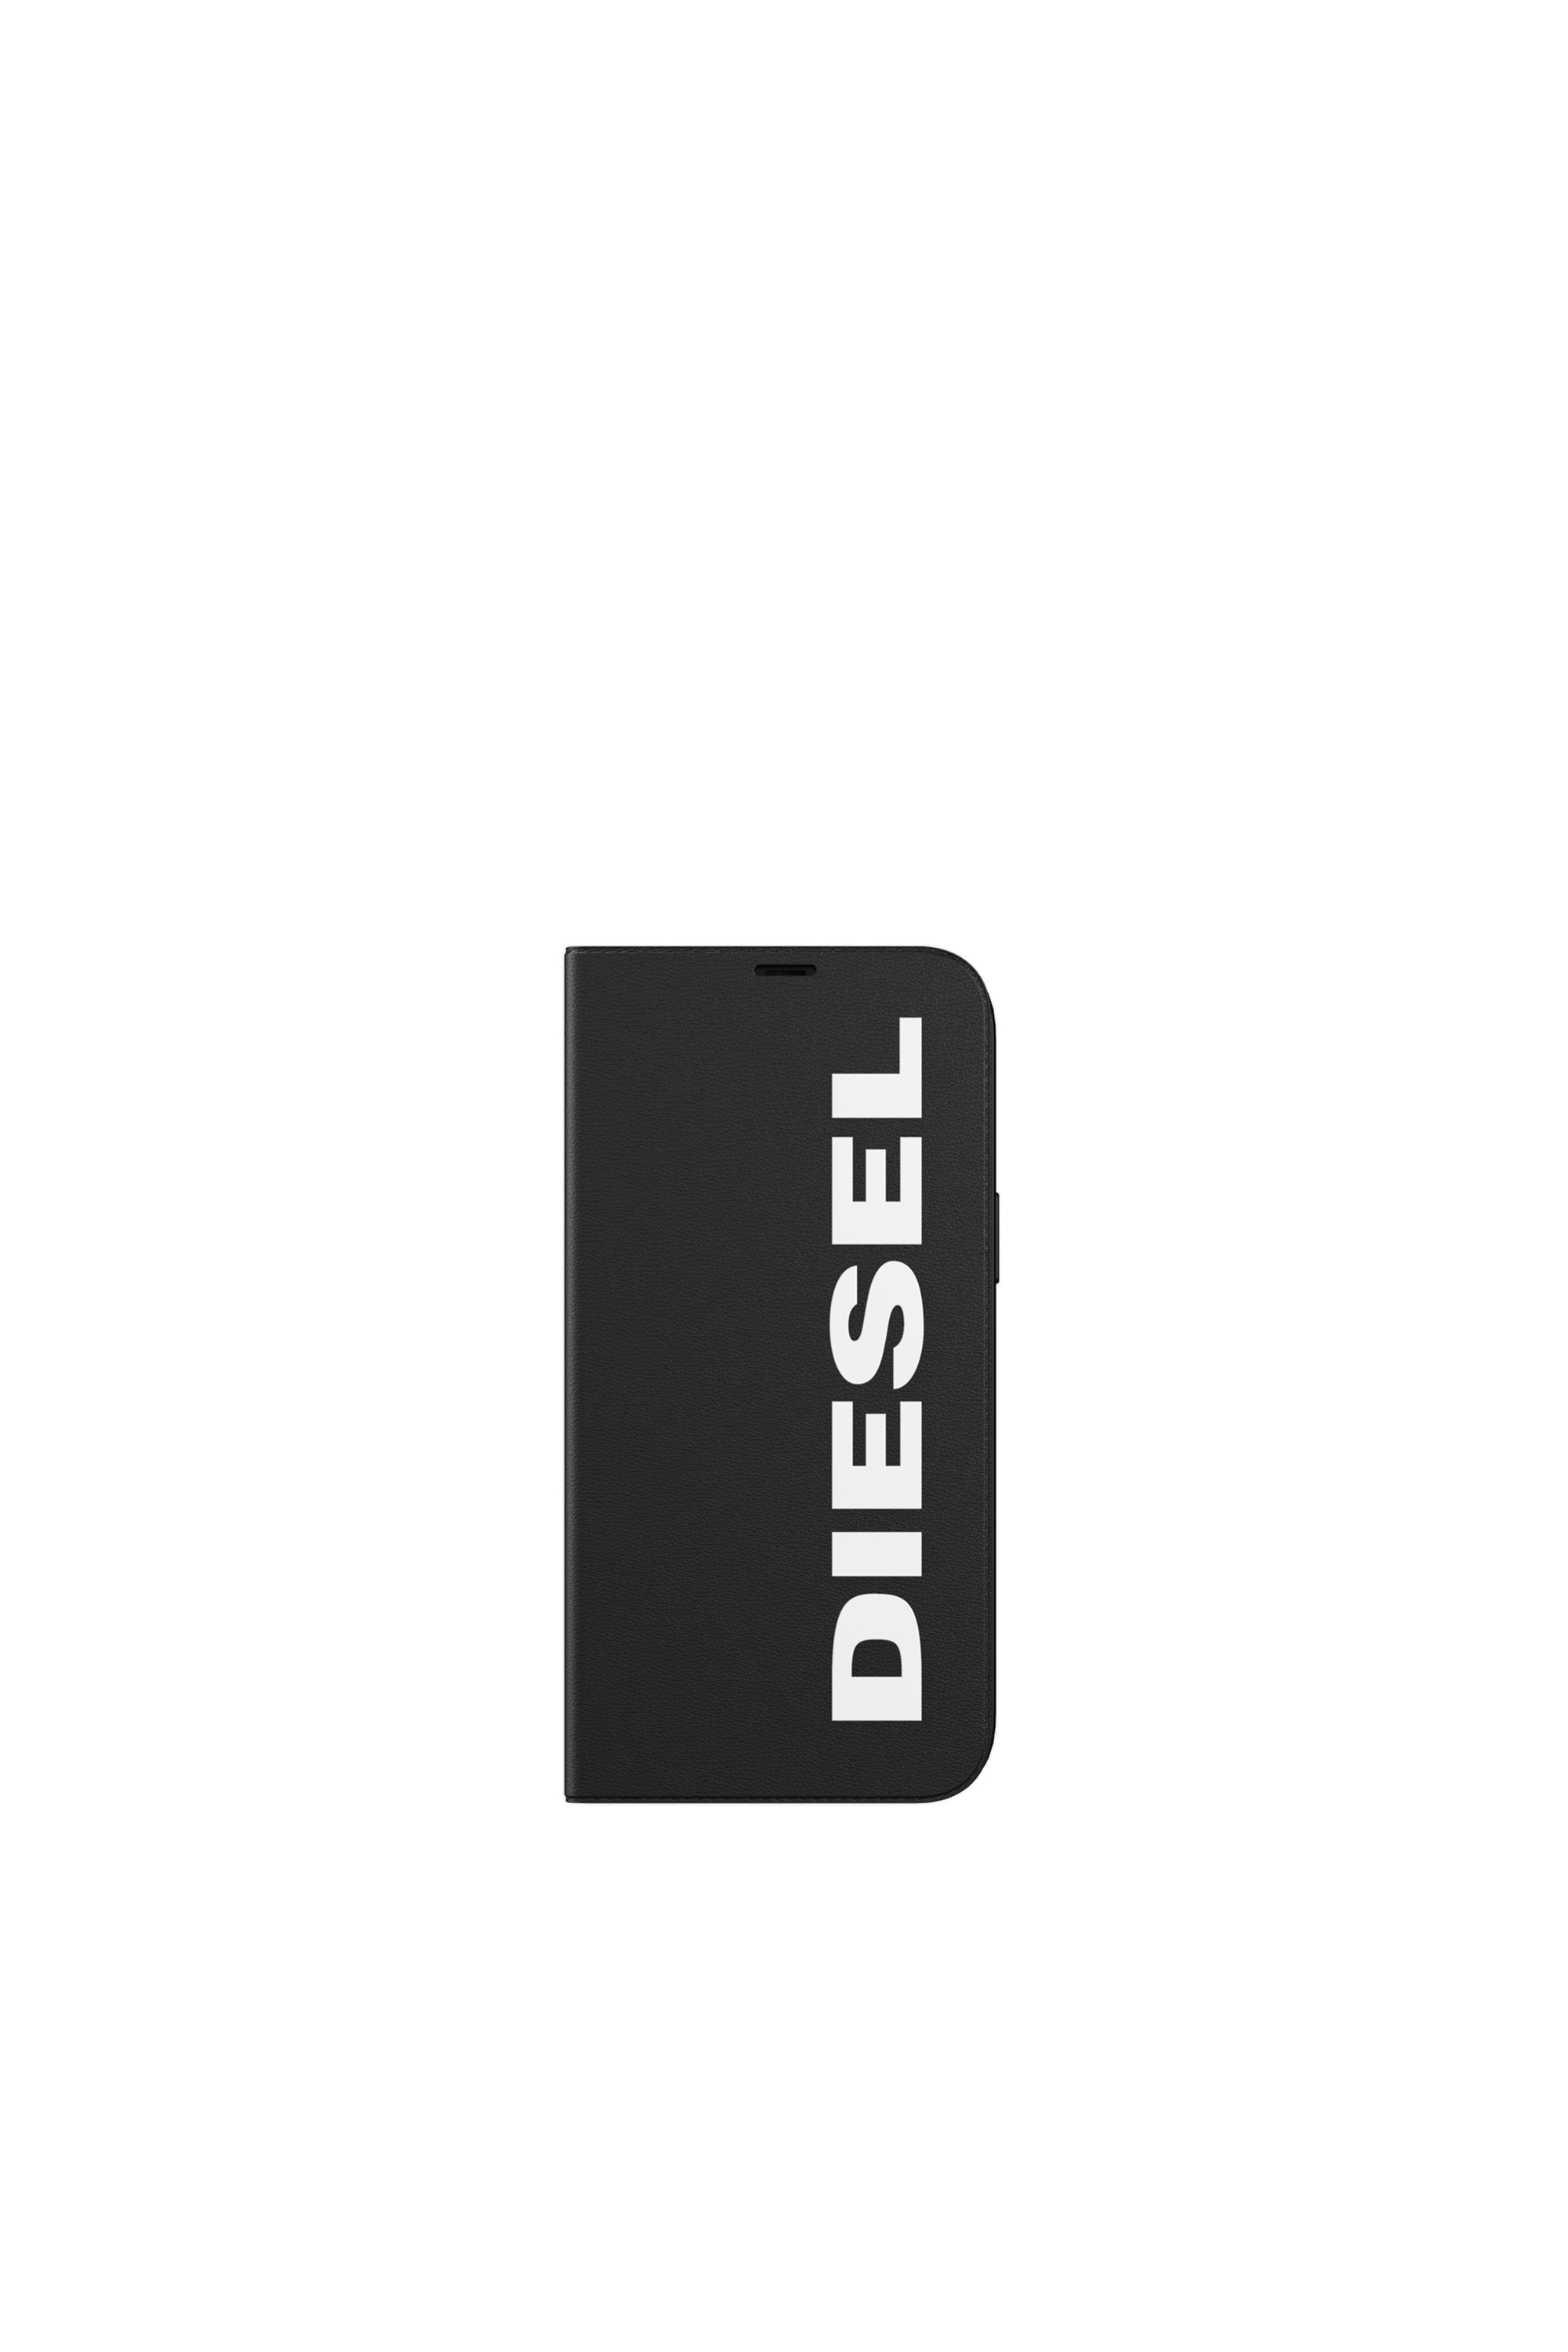 Diesel - 42487, Black - Image 2